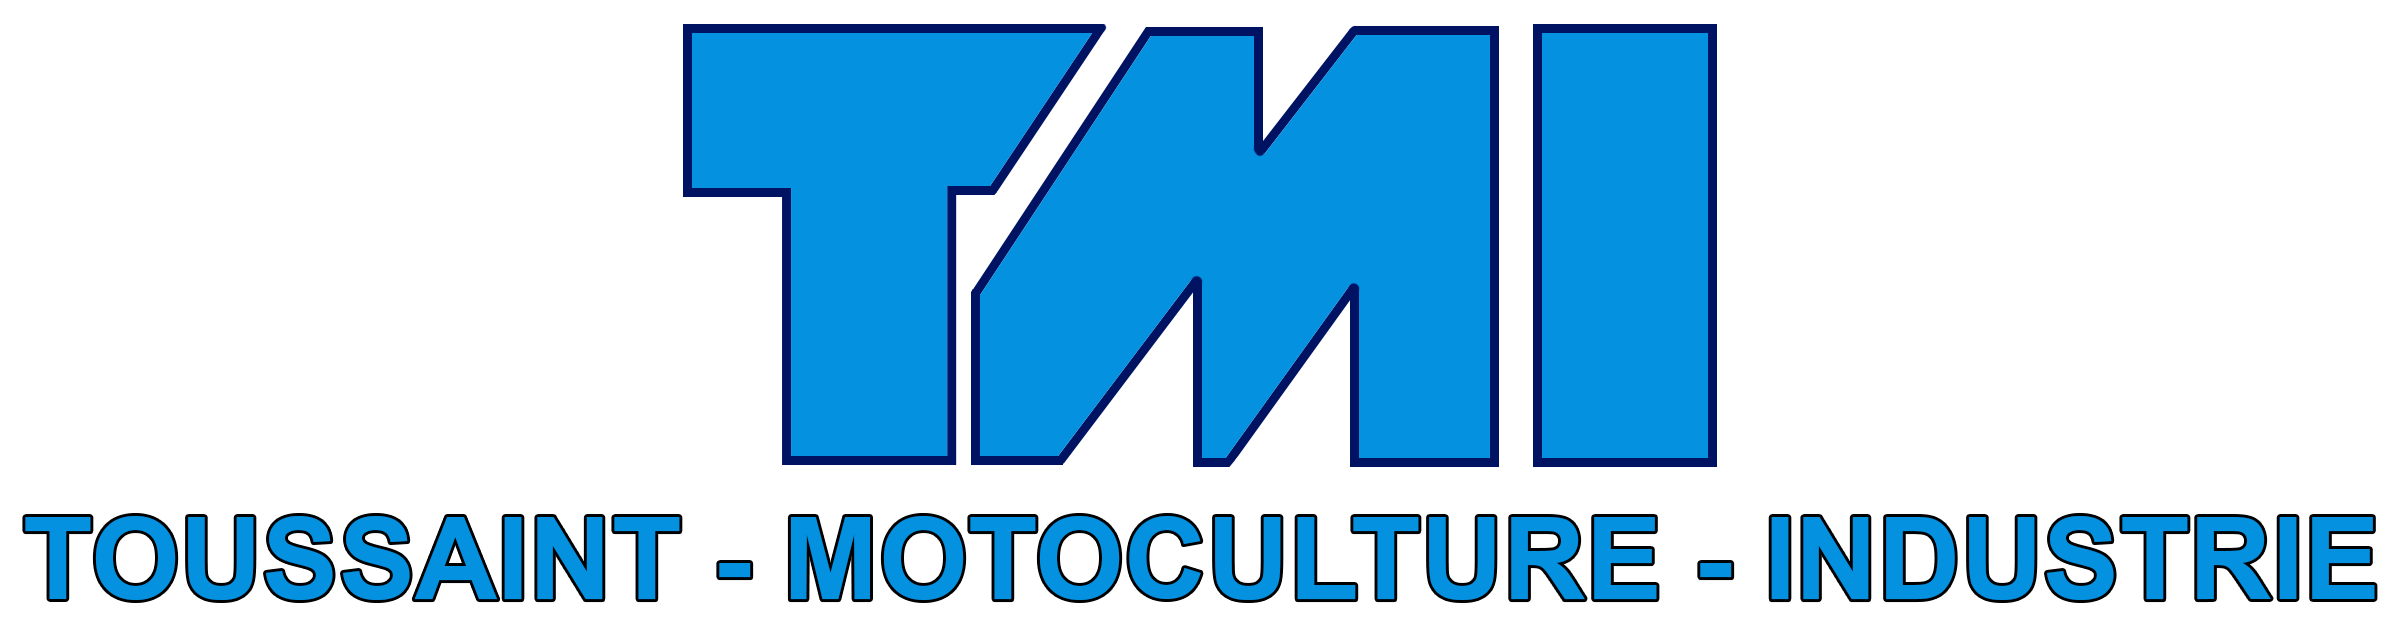 Toussaint Motoculture Industrie